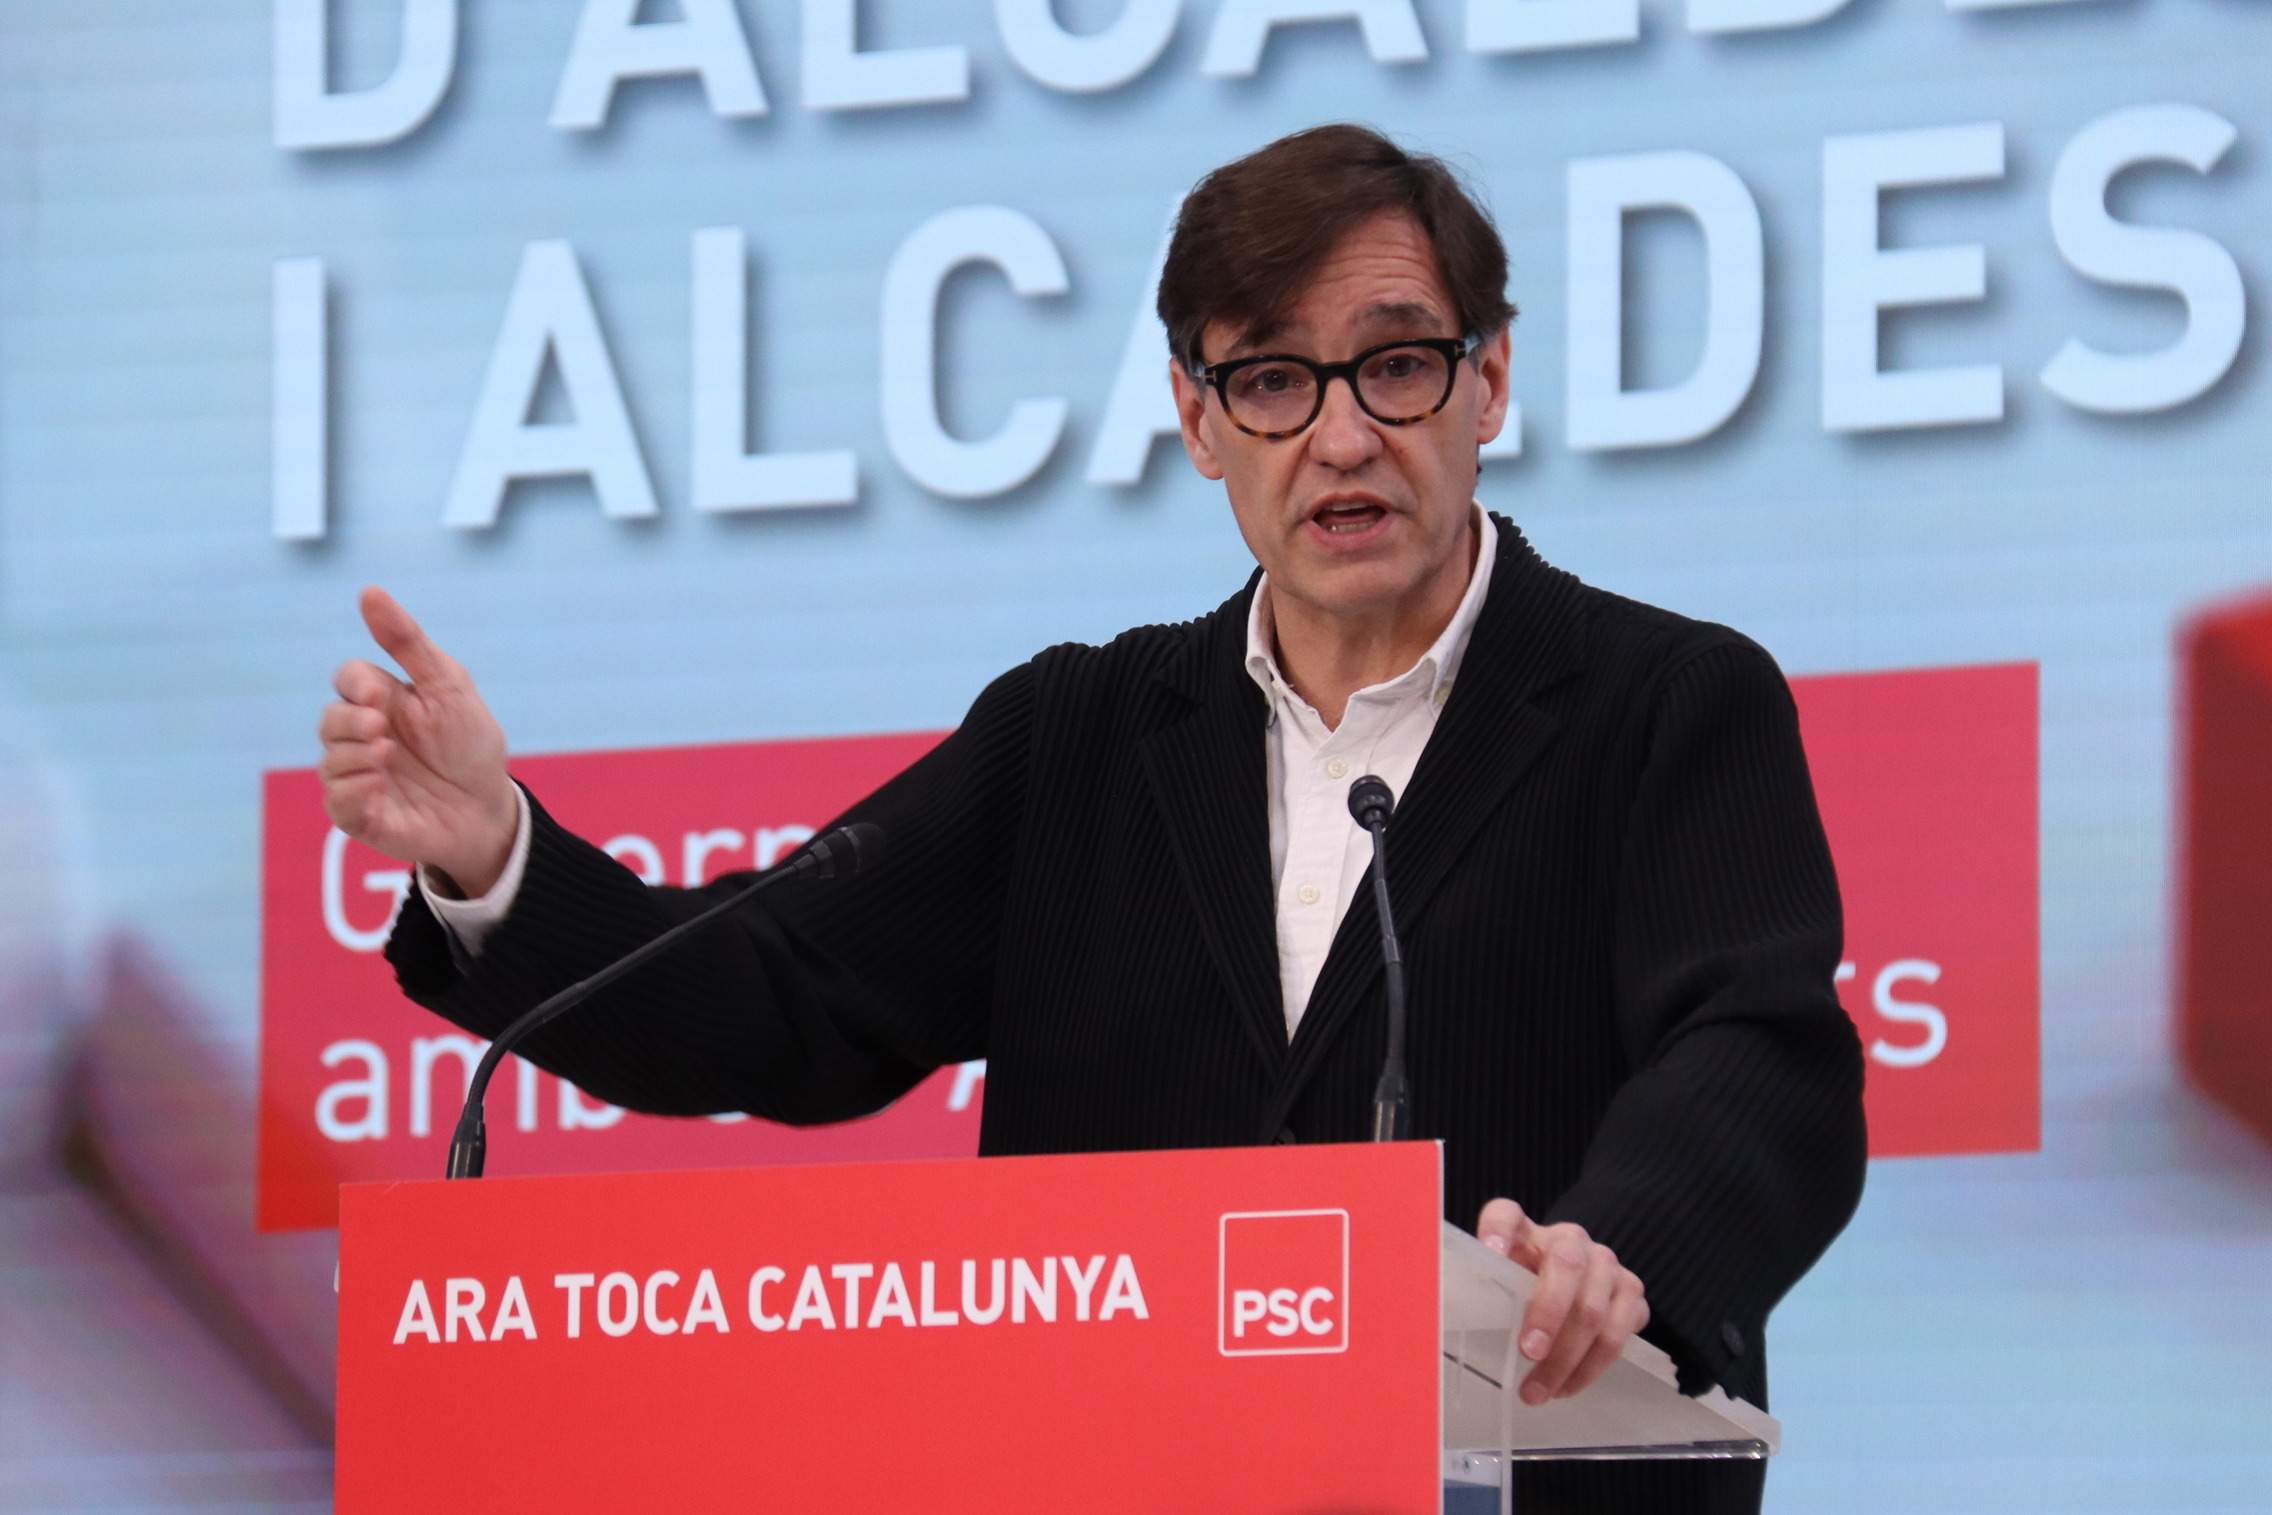 Illa fija la unidad de los catalanes y los servicios públicos como prioridad, entre reproches a ERC y Junts